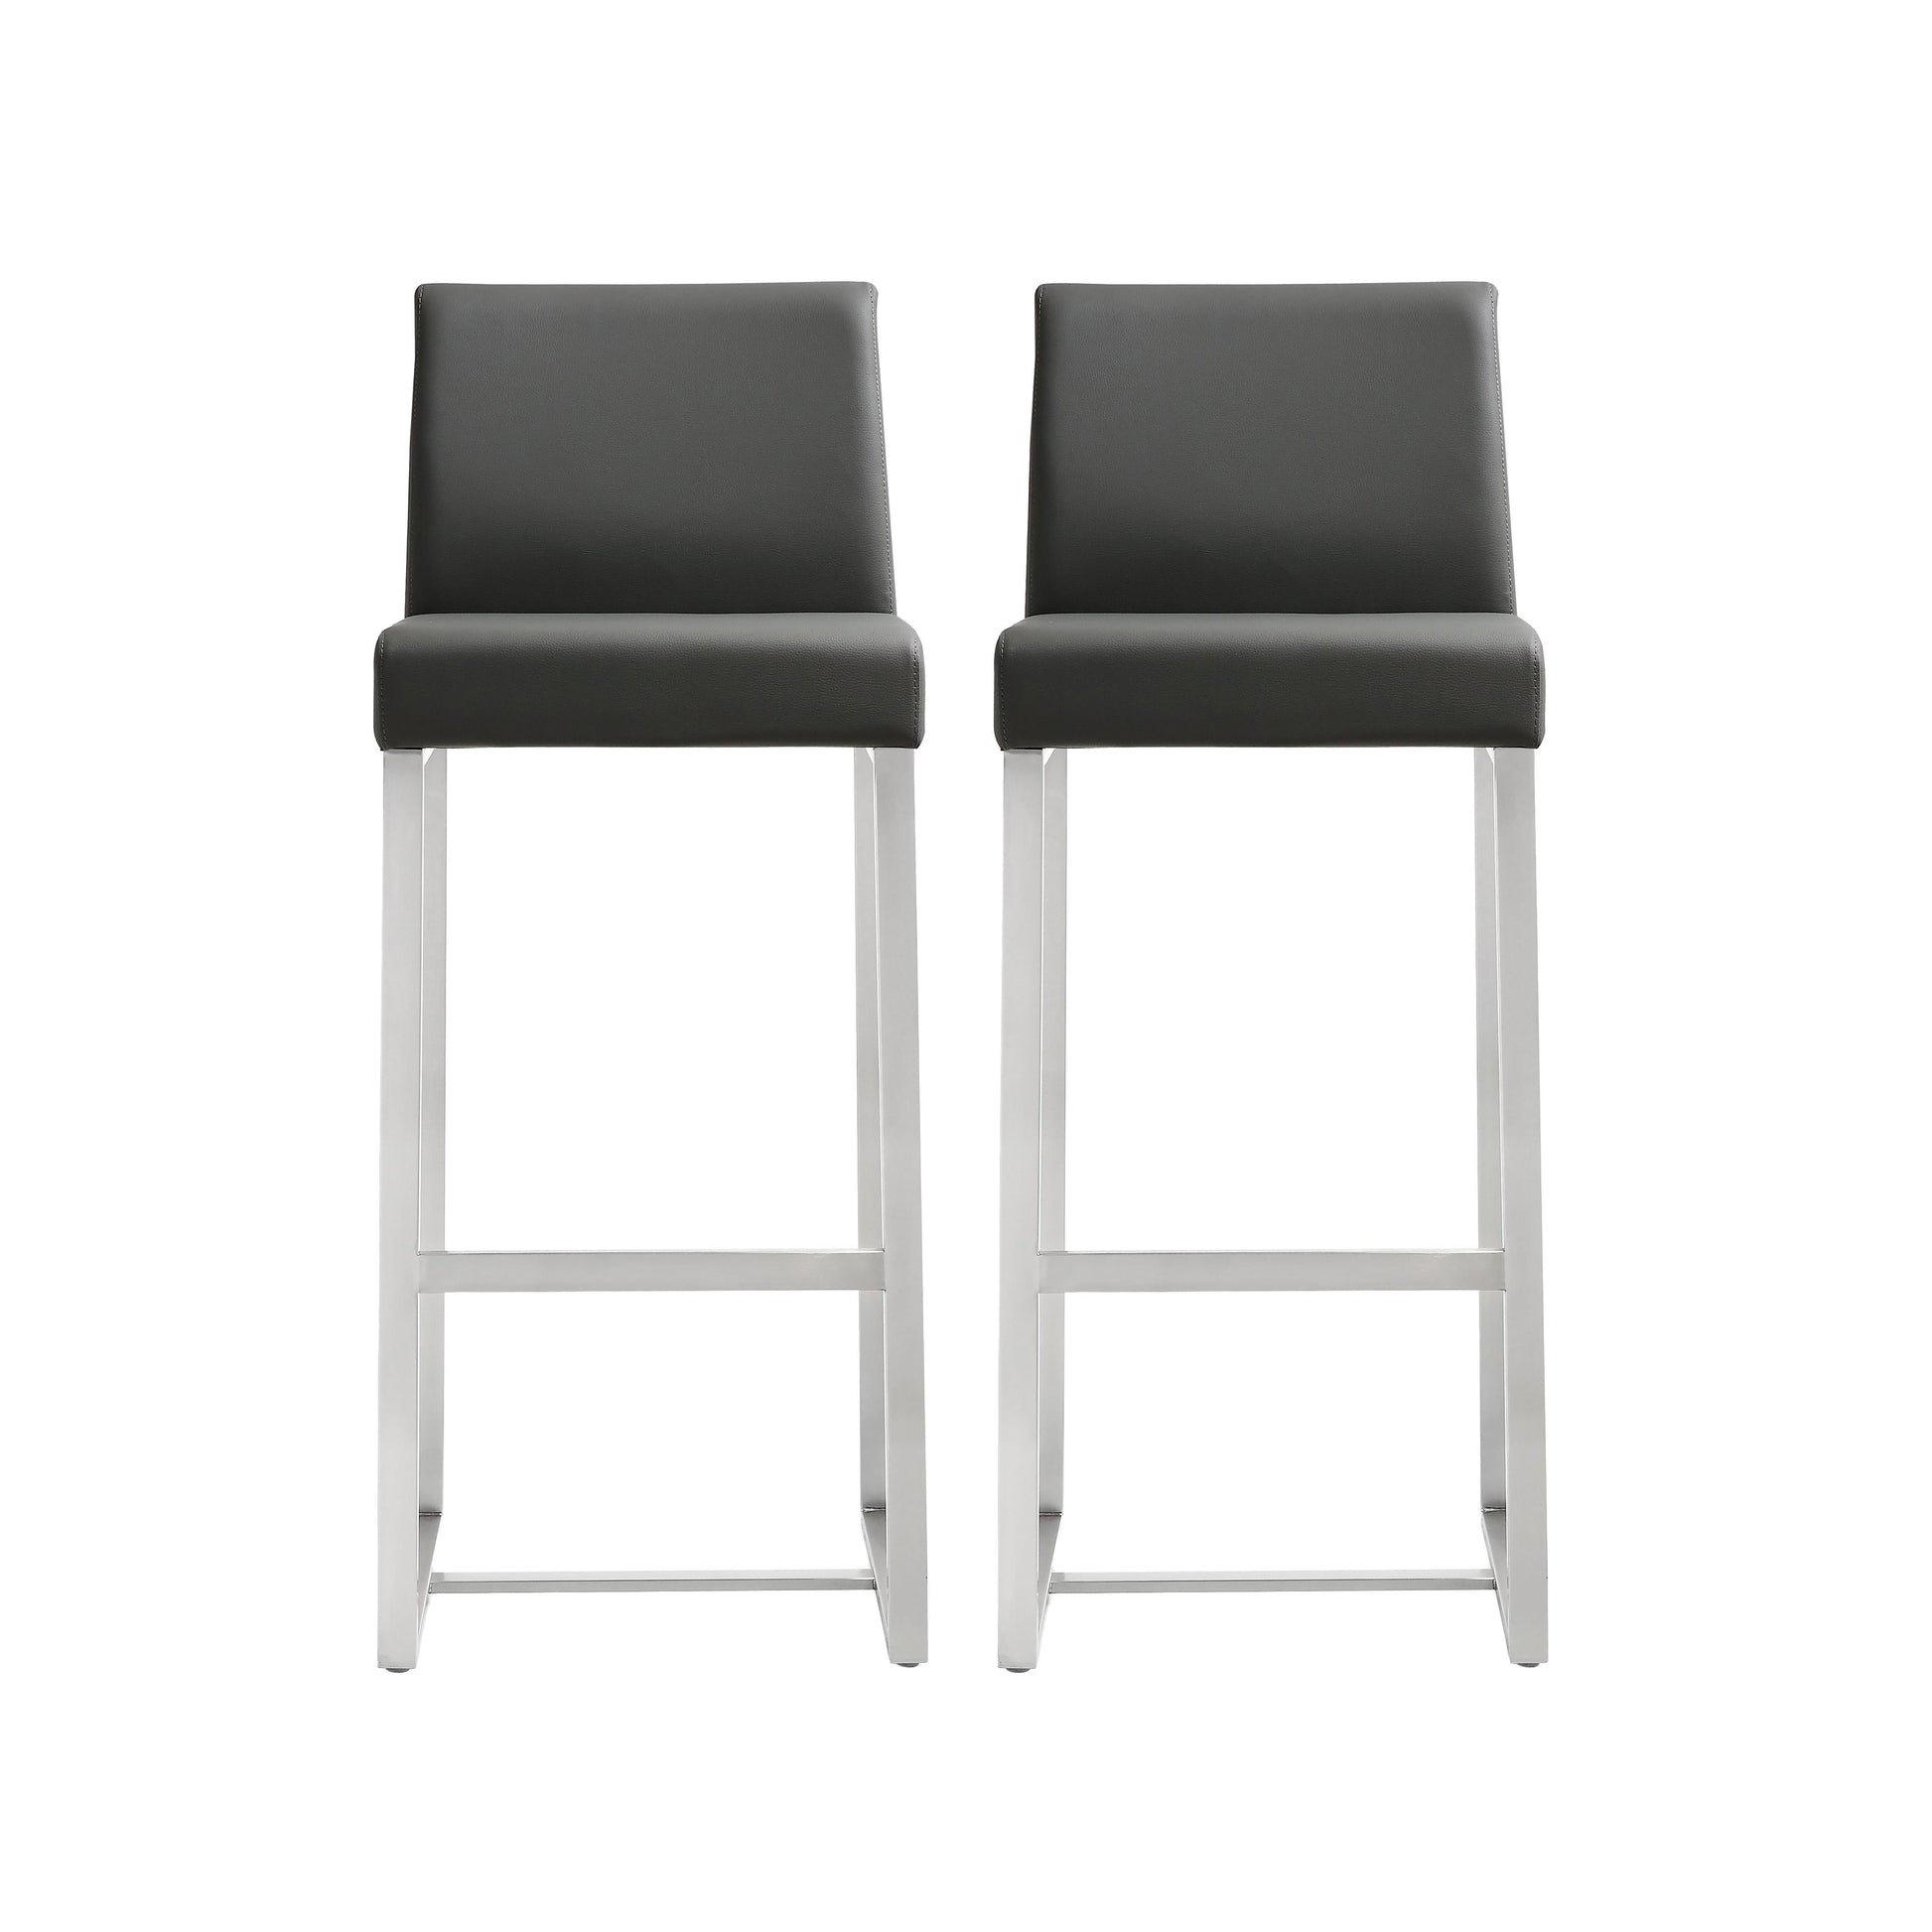 Tov Furniture Denmark Grey Stainless Steel Barstool Set of 2